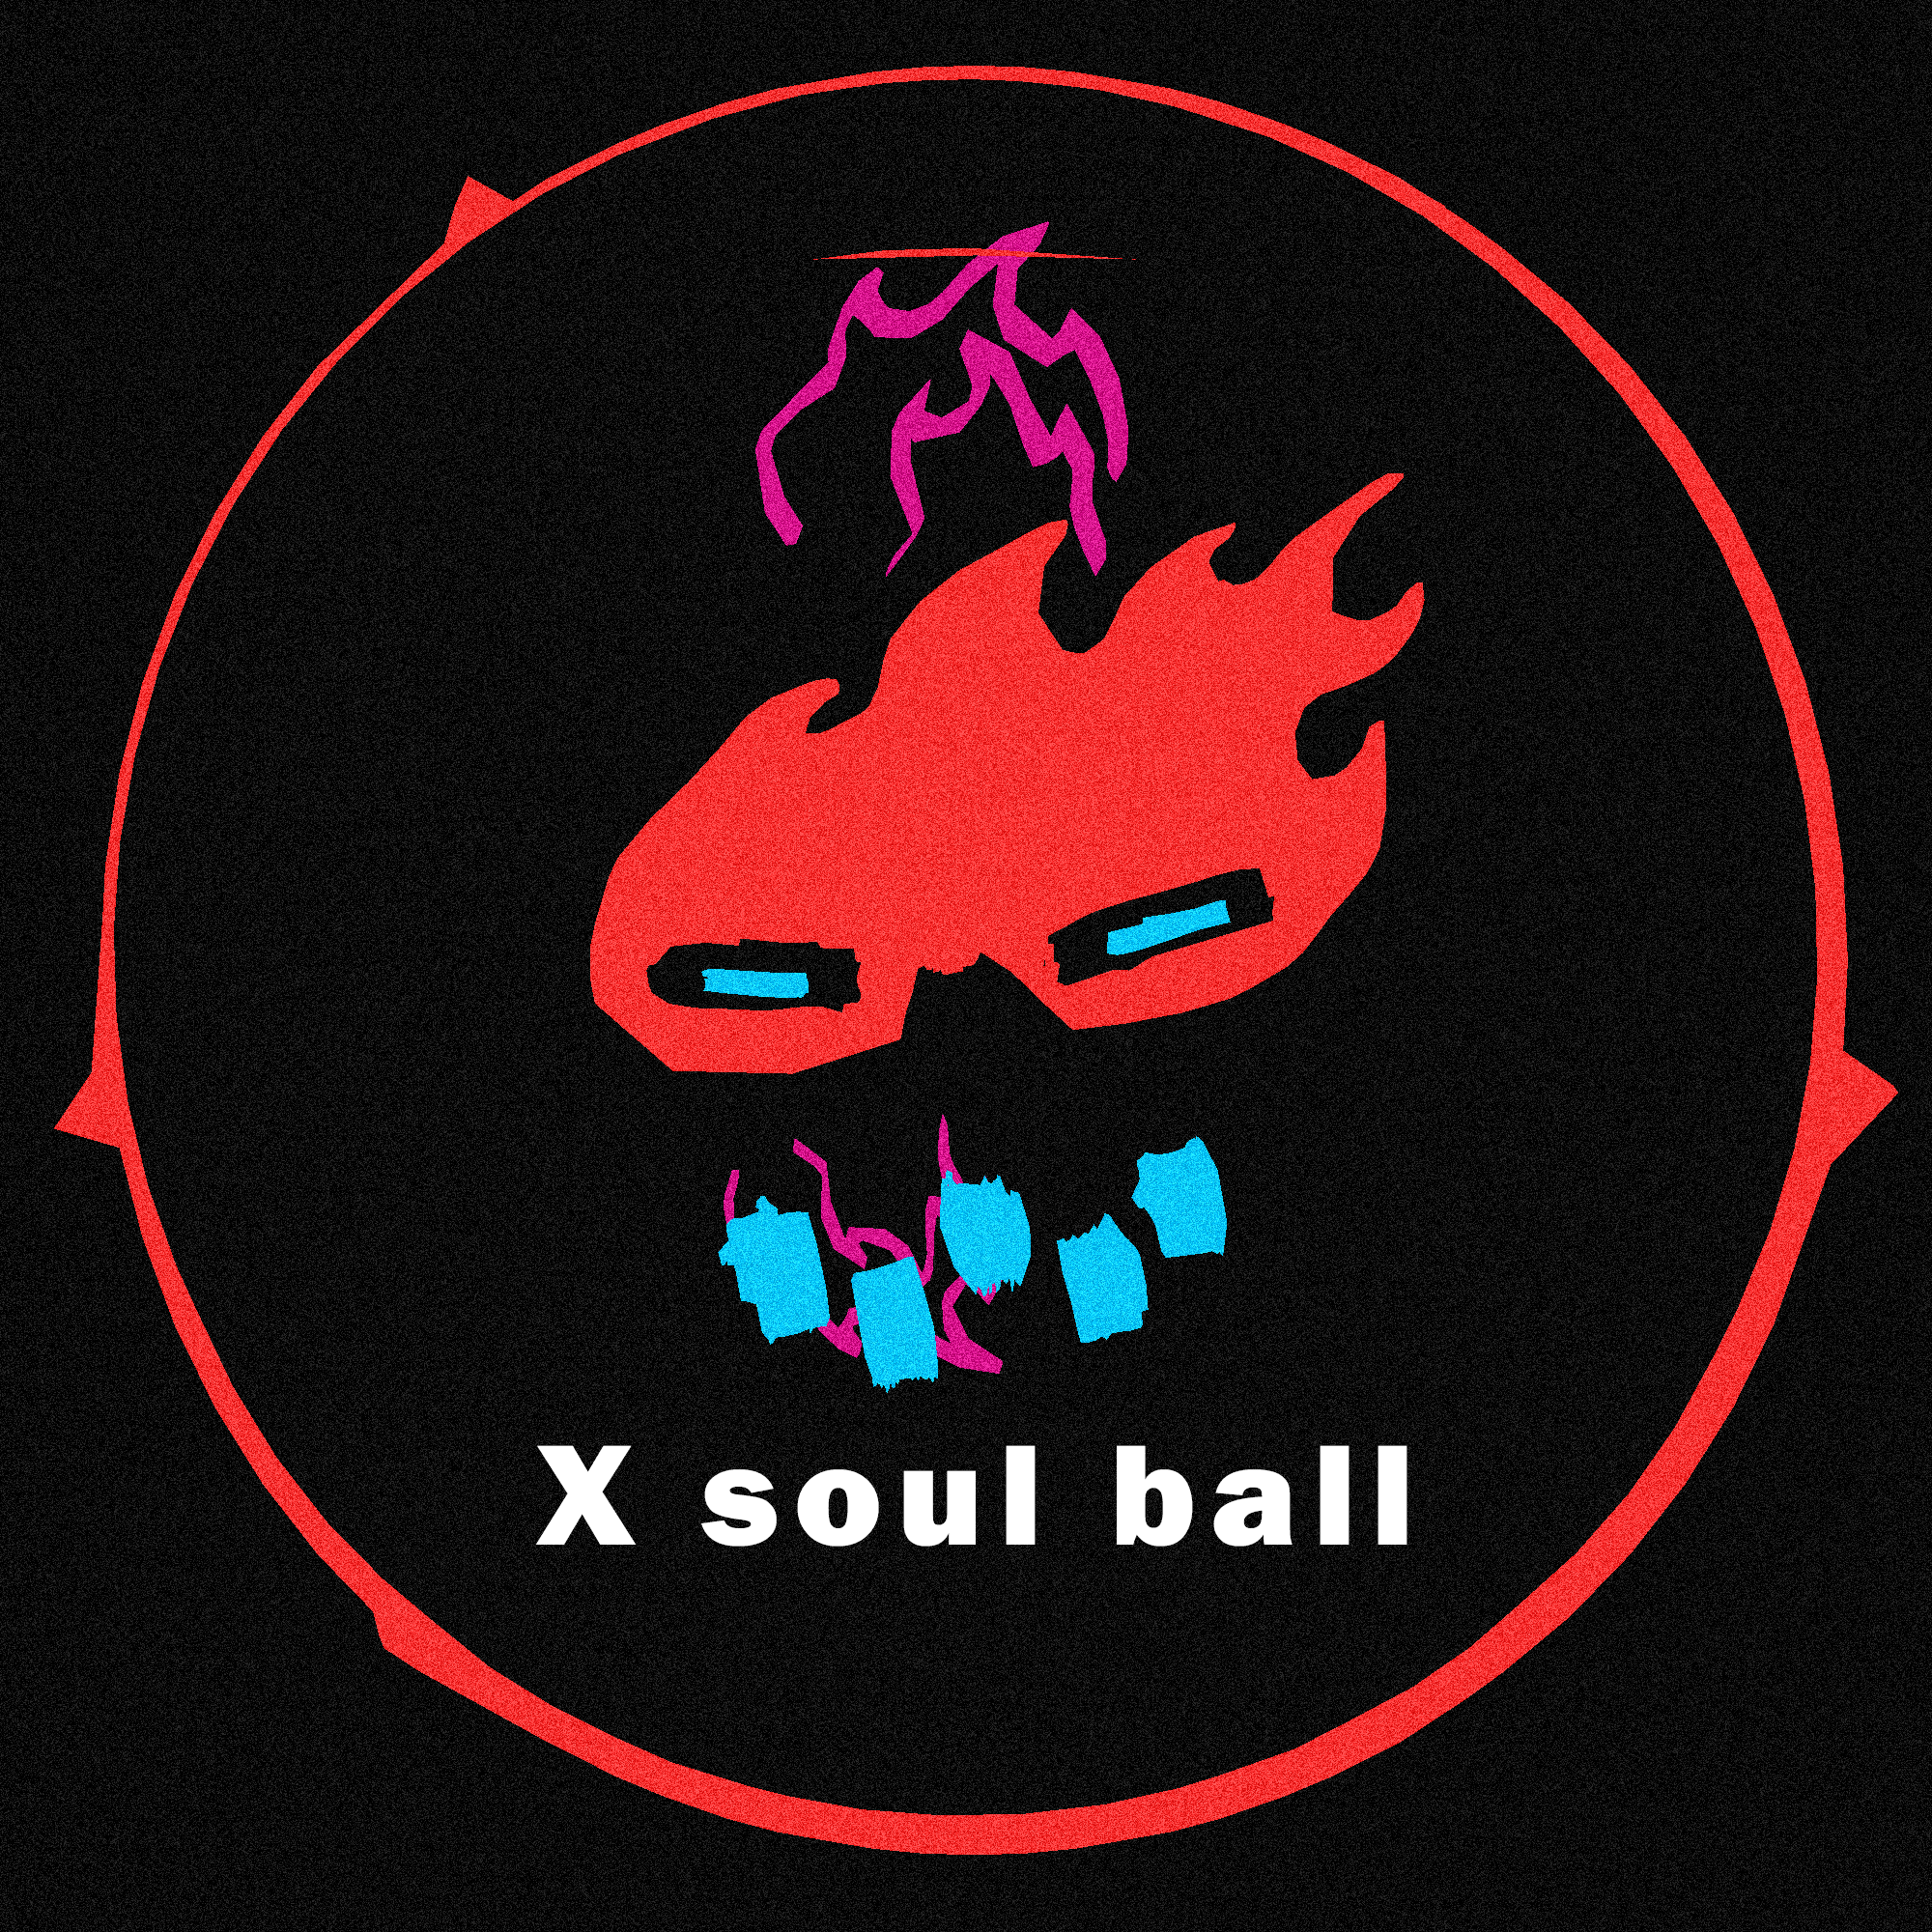 X soul ball